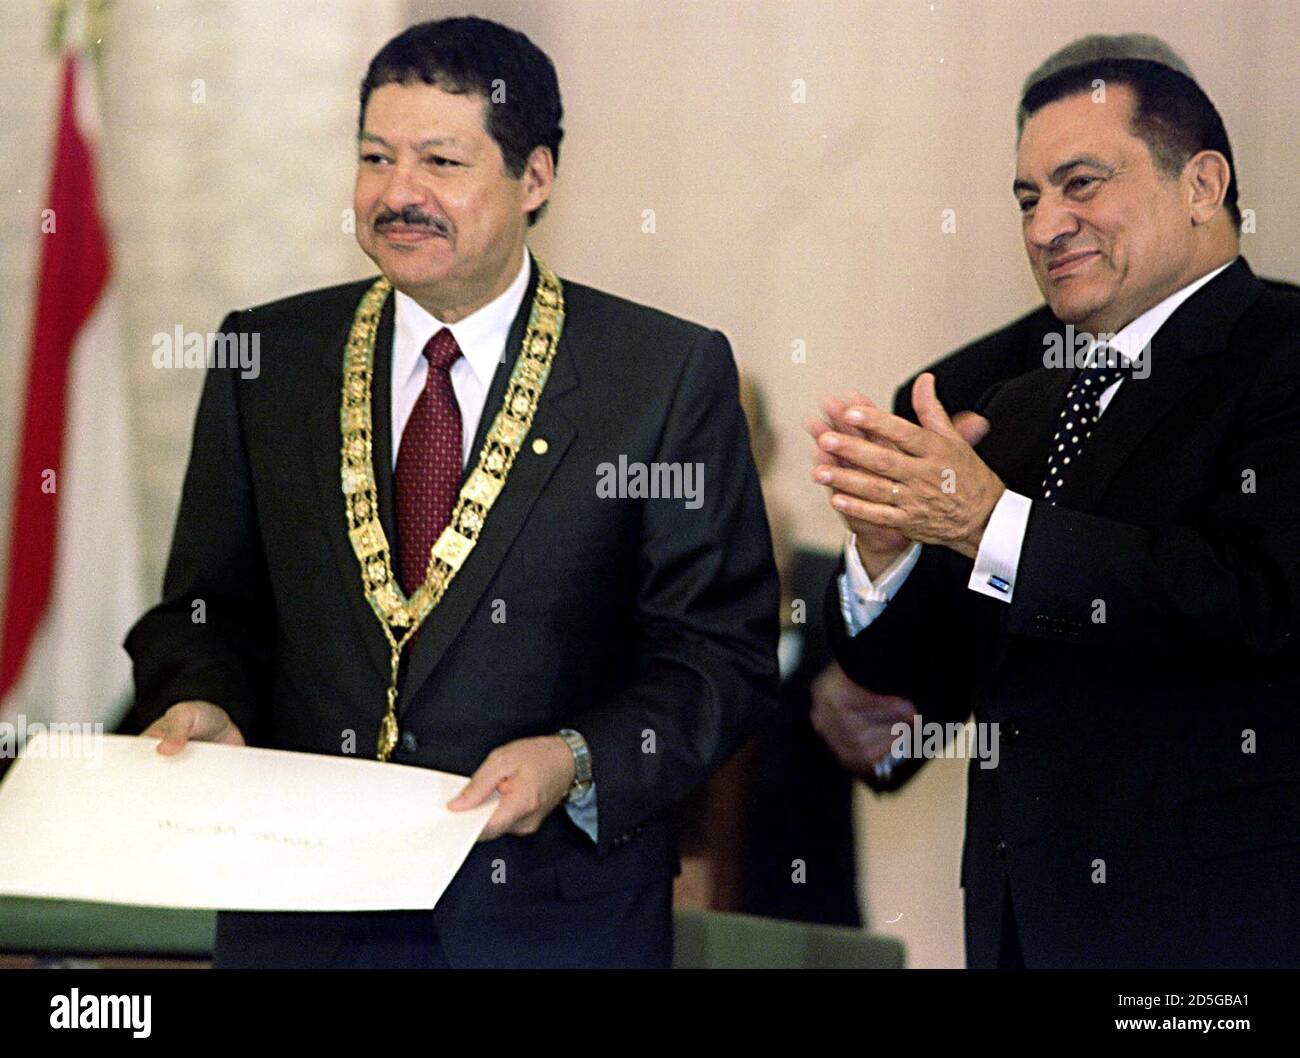 El químico egipcio Ahmed Zewail (L) sonríe después de recibir el Nile Necklace, el premio más prestigioso del país, del presidente egipcio Hosni Mubarak, el 16 de diciembre por ganar el Premio Nobel de Química el viernes en Estocolmo. Zewail es el segundo premio Nobel egipcio después de que el novelista Naguib Mahfouz ganó el premio de literatura en 1988. AN/JDP Foto de stock